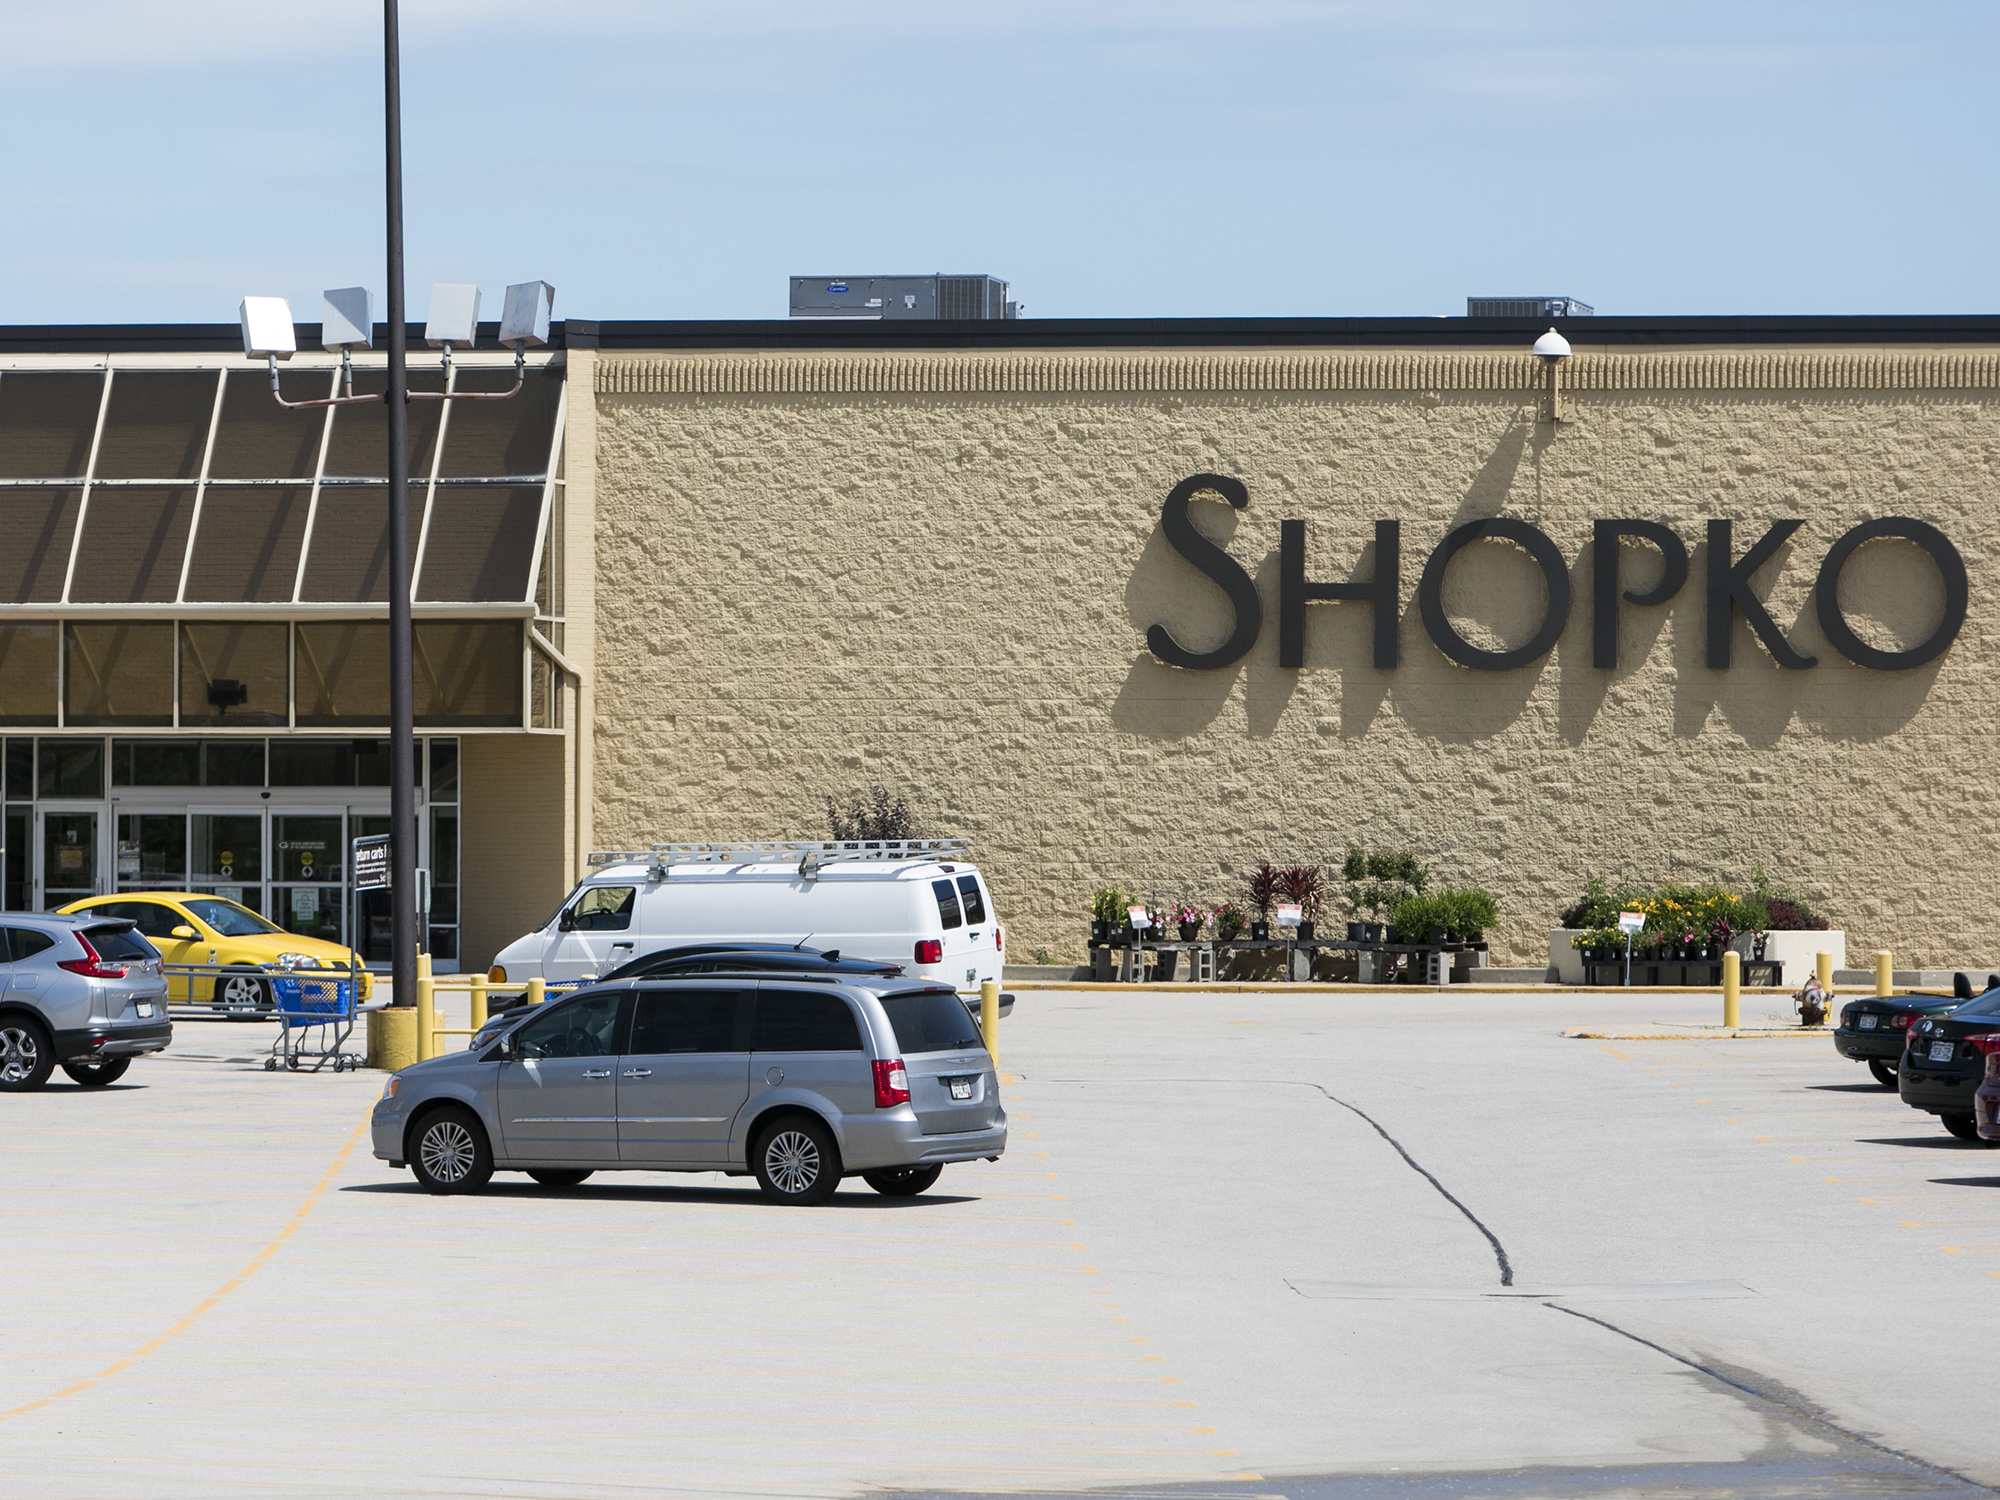 A Shopko retail store in Kenosha, Wisconsin.